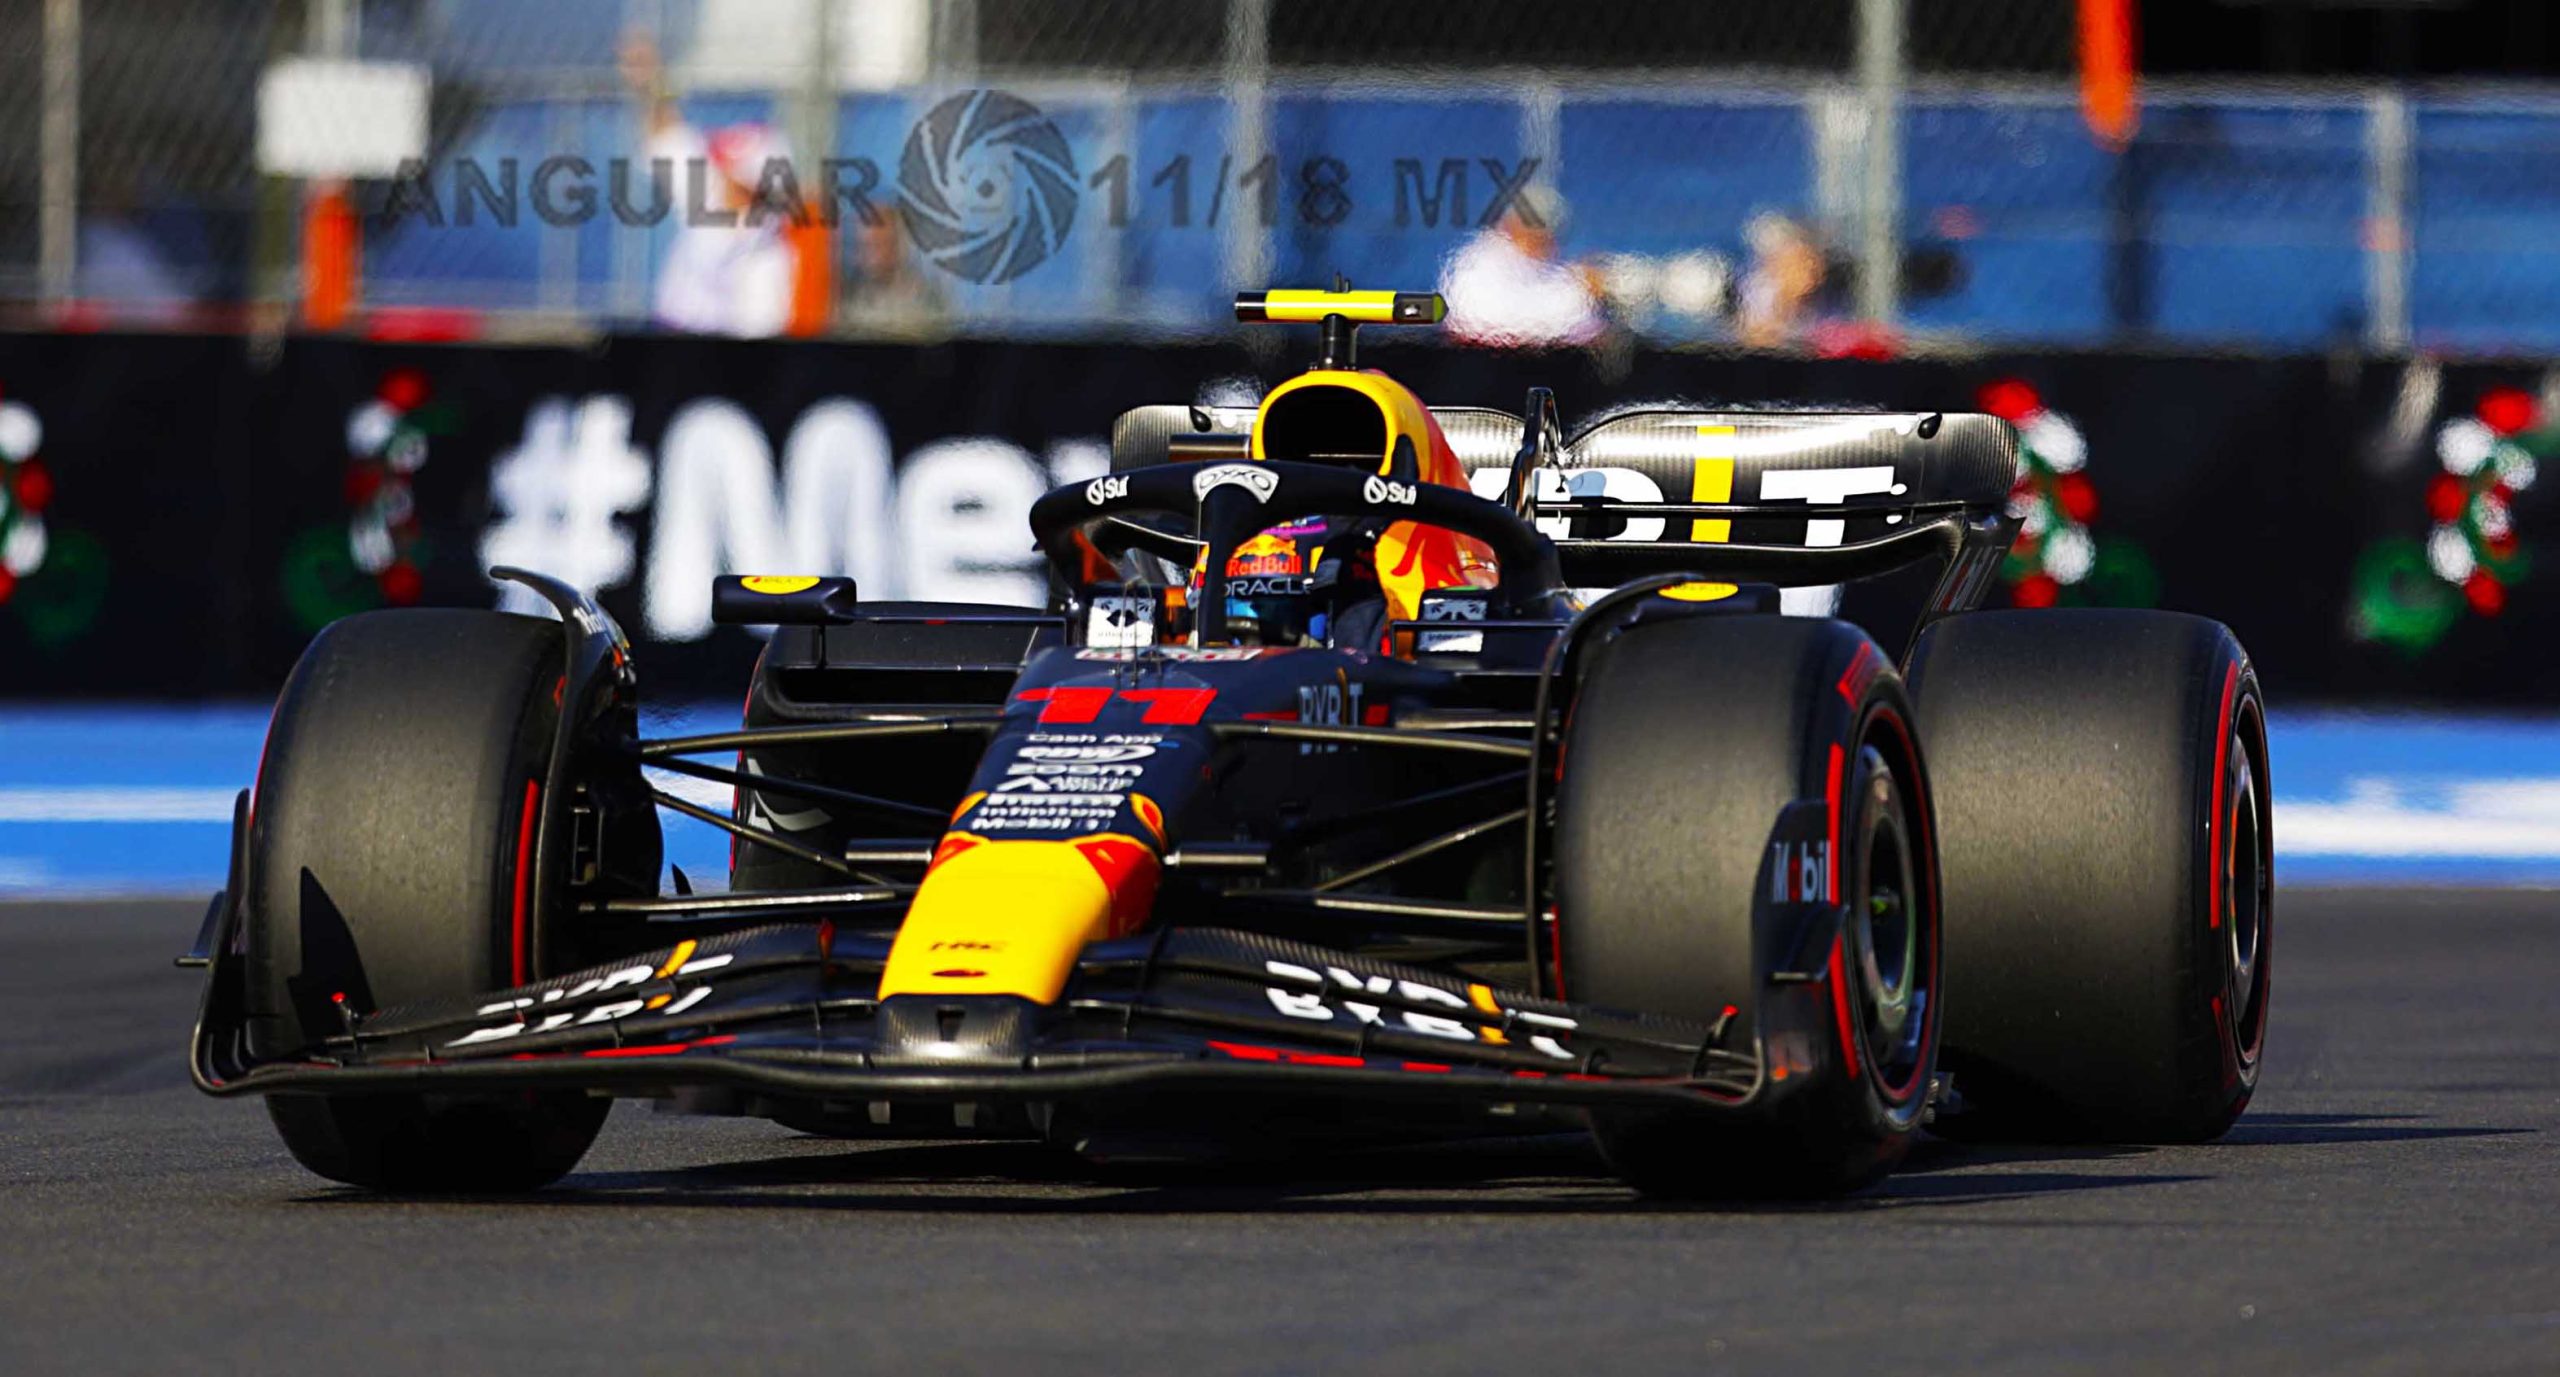 Max Verstappen consigue su quinto triunfo en el México GP